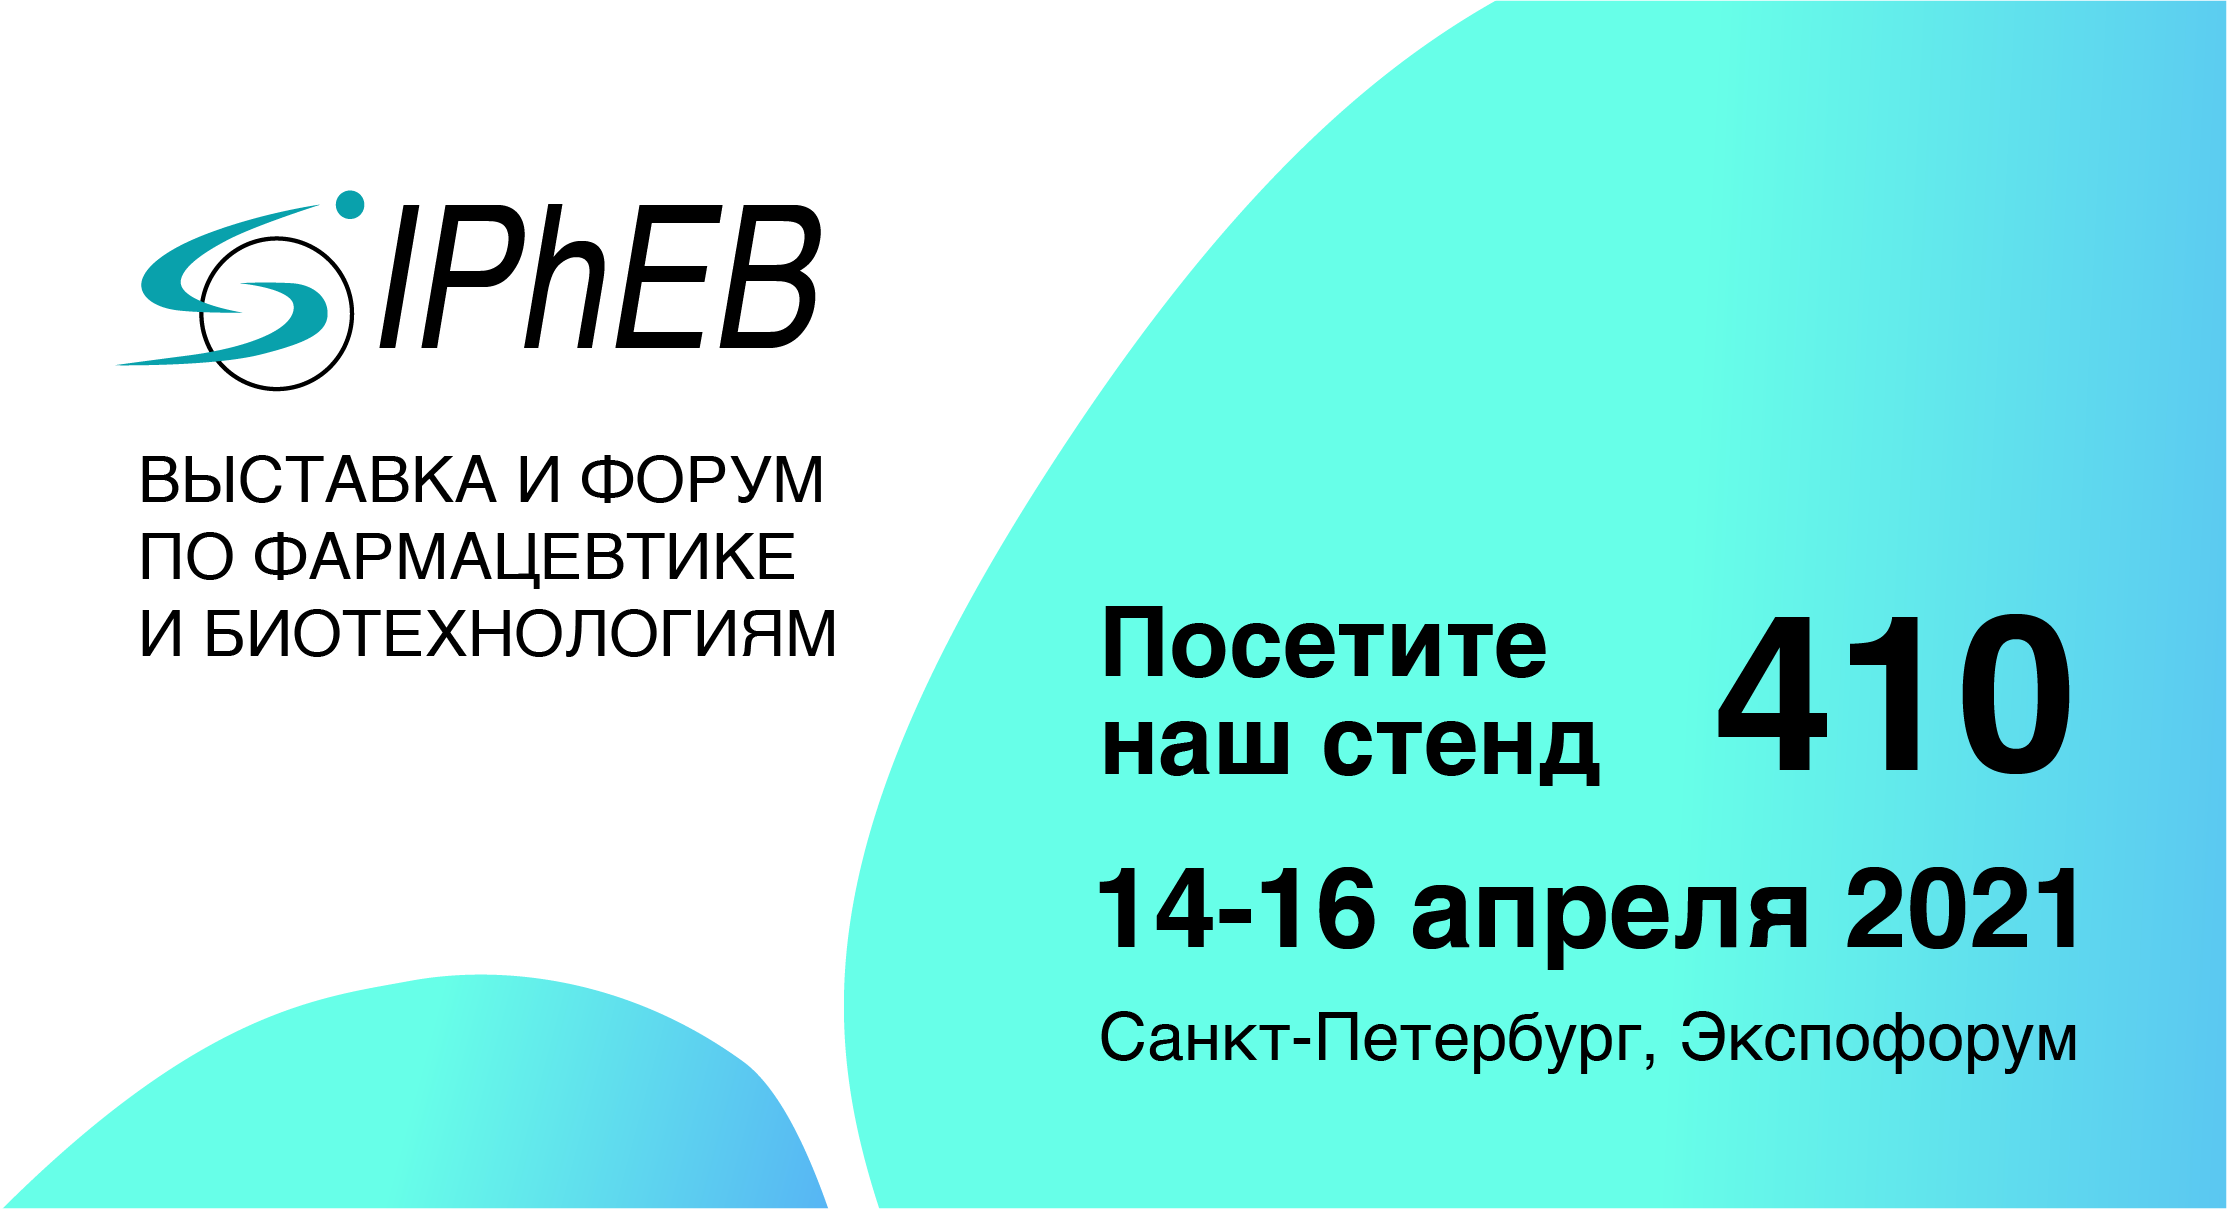 BRIGHT WAY GROUP приглашает Вас посетить наш стенд на Международной выставке и форуме по фармацевтике и биотехнологиям PhEB Russia, Санкт-Петербург